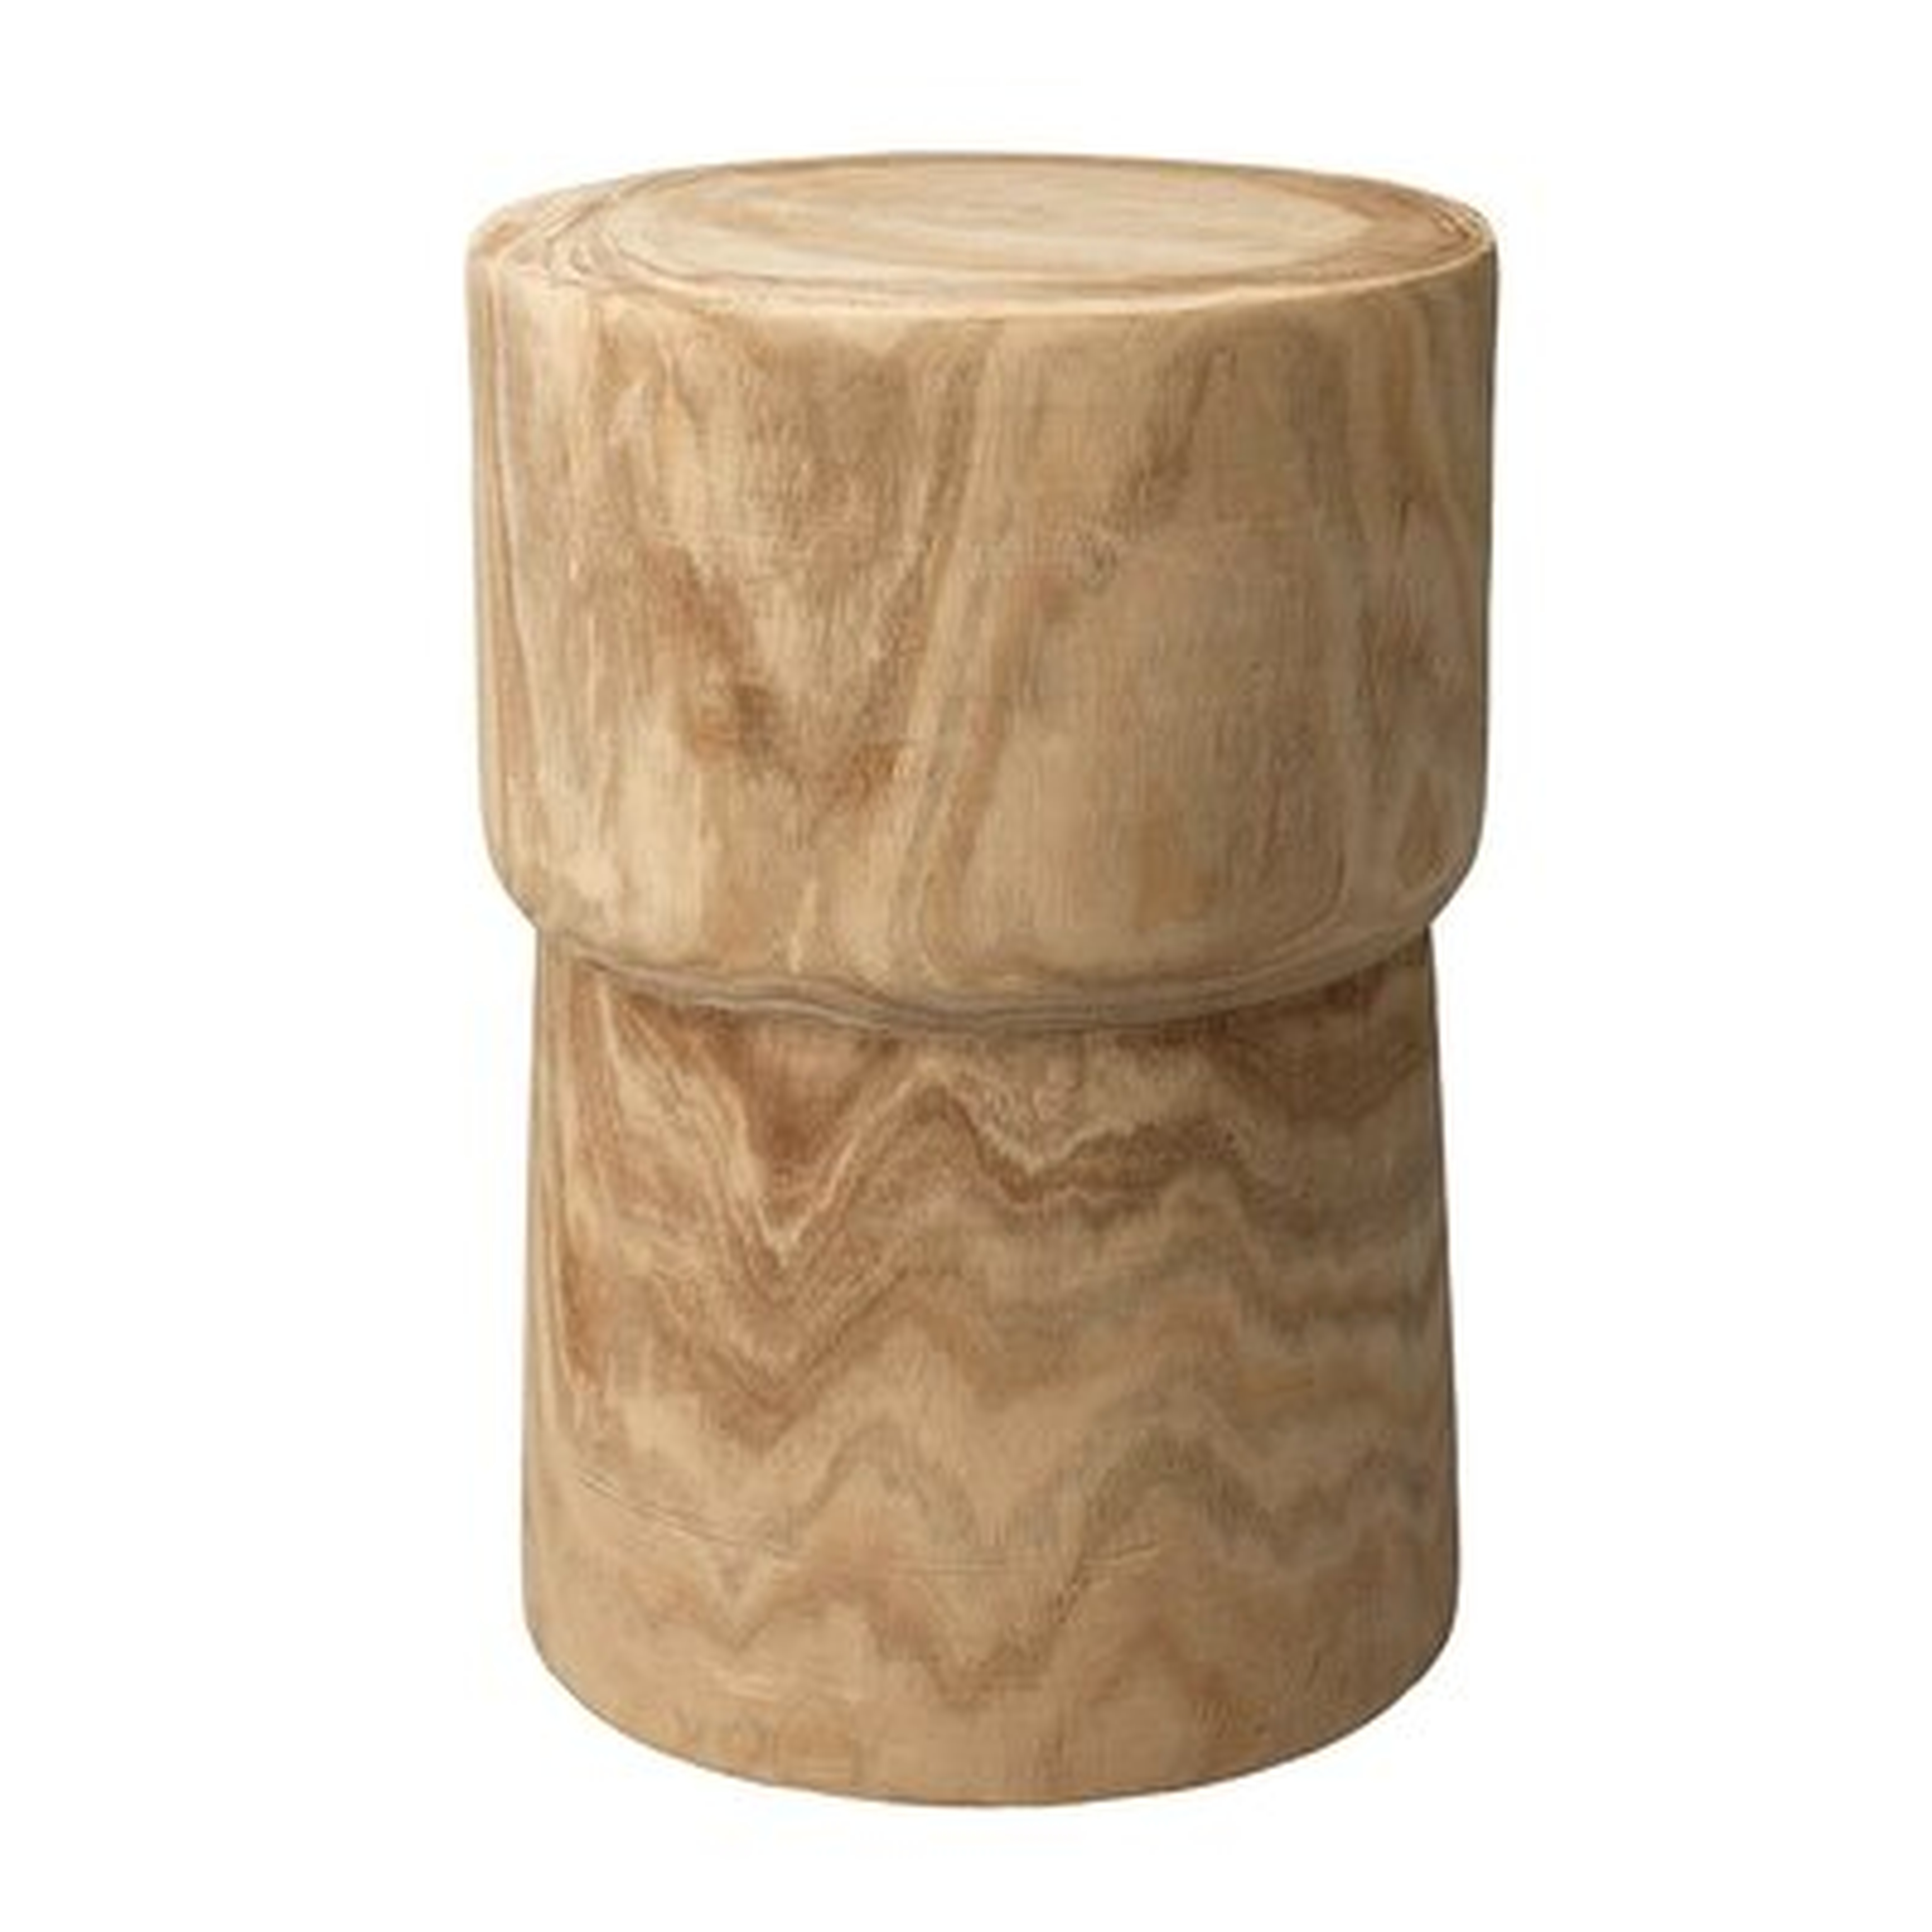 Hopkint Solid Wood Drum End Table - Wayfair